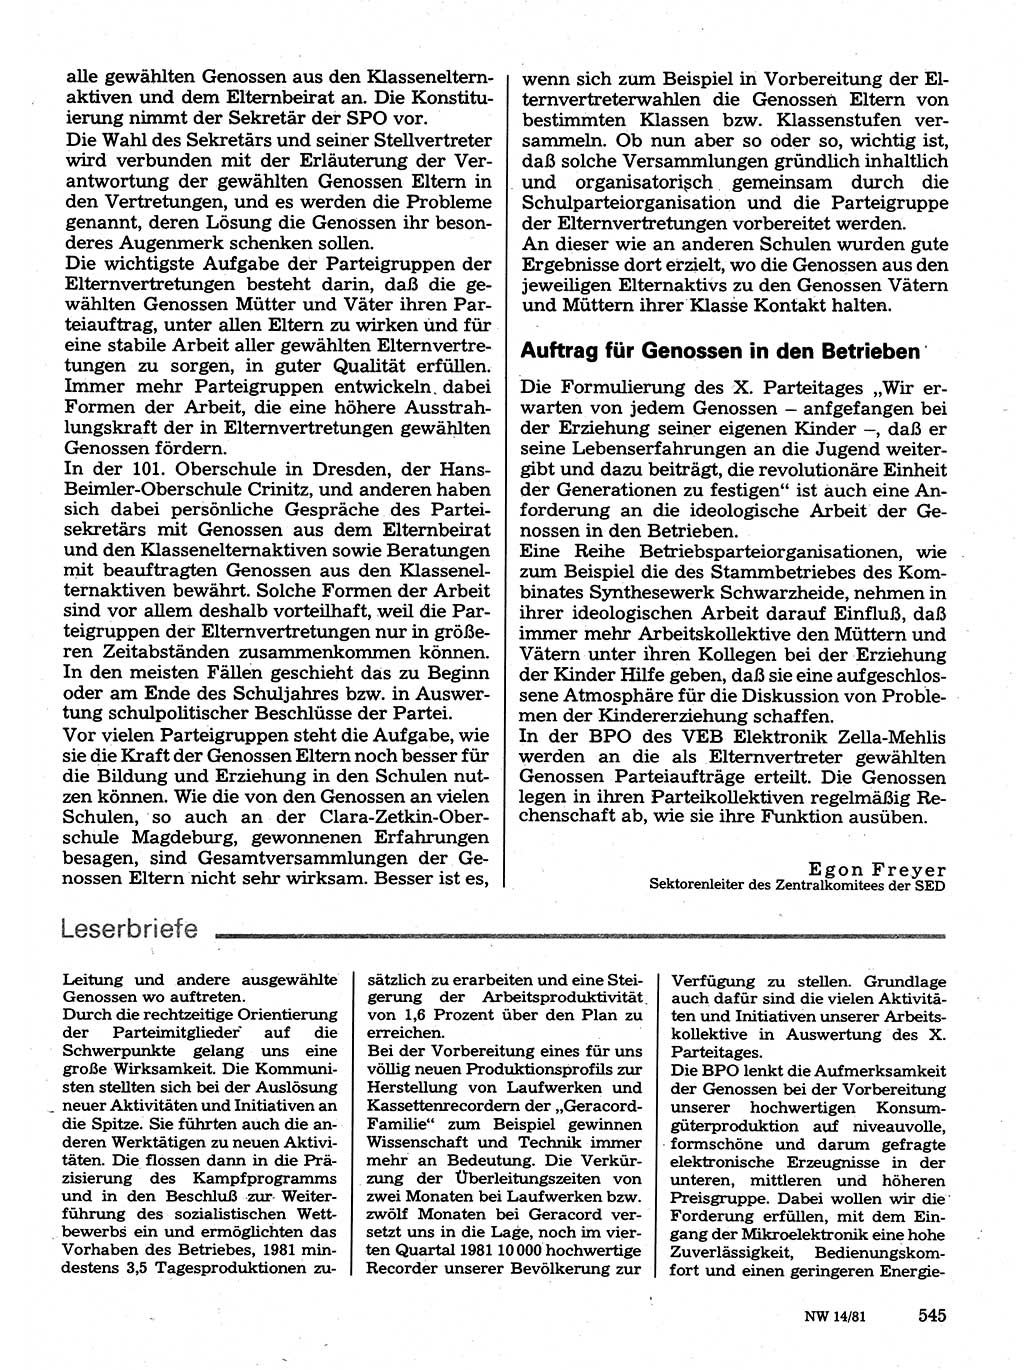 Neuer Weg (NW), Organ des Zentralkomitees (ZK) der SED (Sozialistische Einheitspartei Deutschlands) für Fragen des Parteilebens, 36. Jahrgang [Deutsche Demokratische Republik (DDR)] 1981, Seite 545 (NW ZK SED DDR 1981, S. 545)